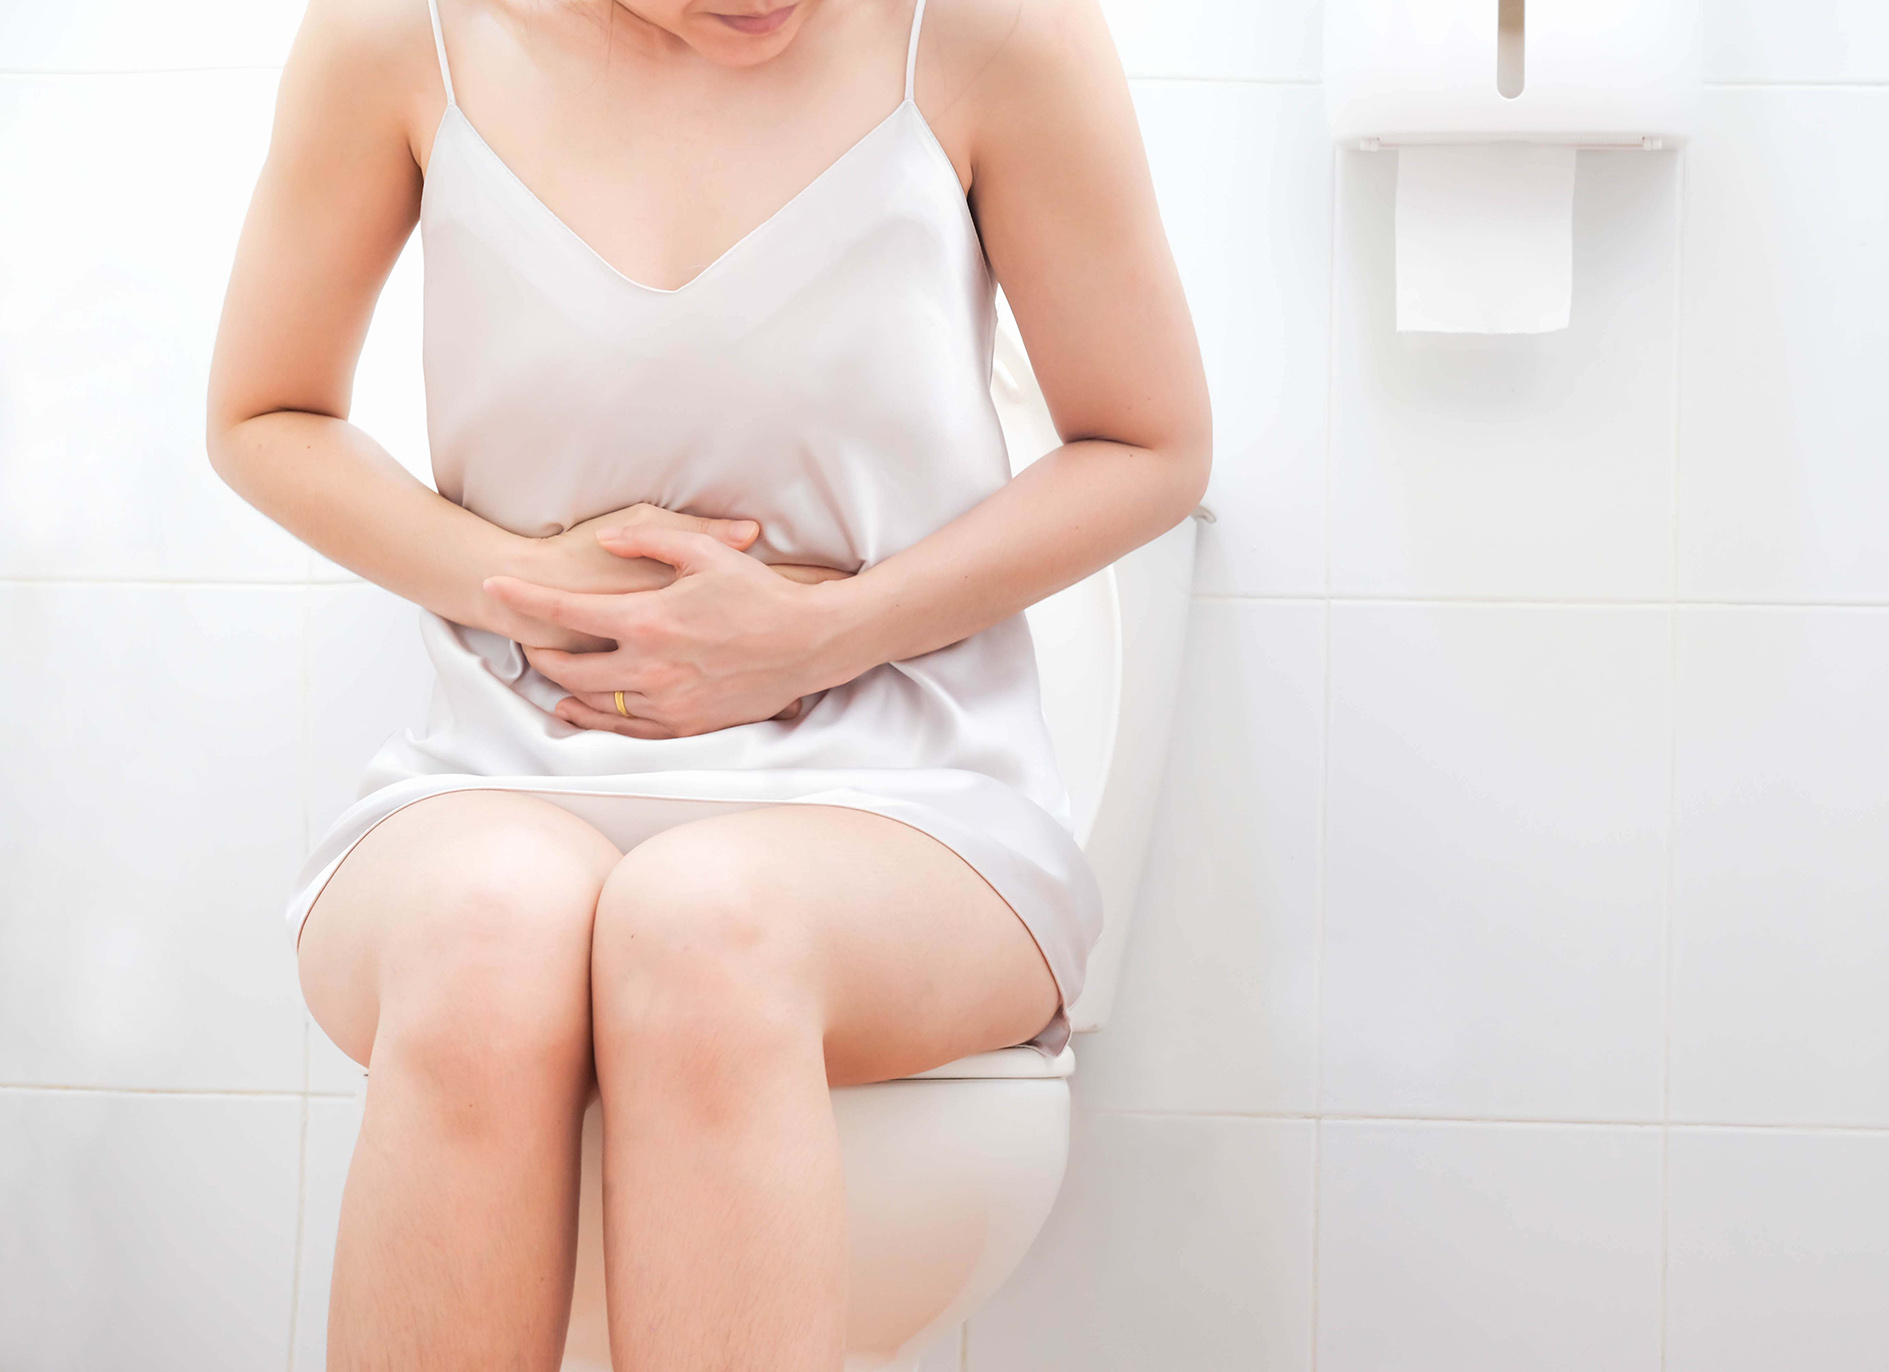 women wearing white nightwear on toilet holding stomach